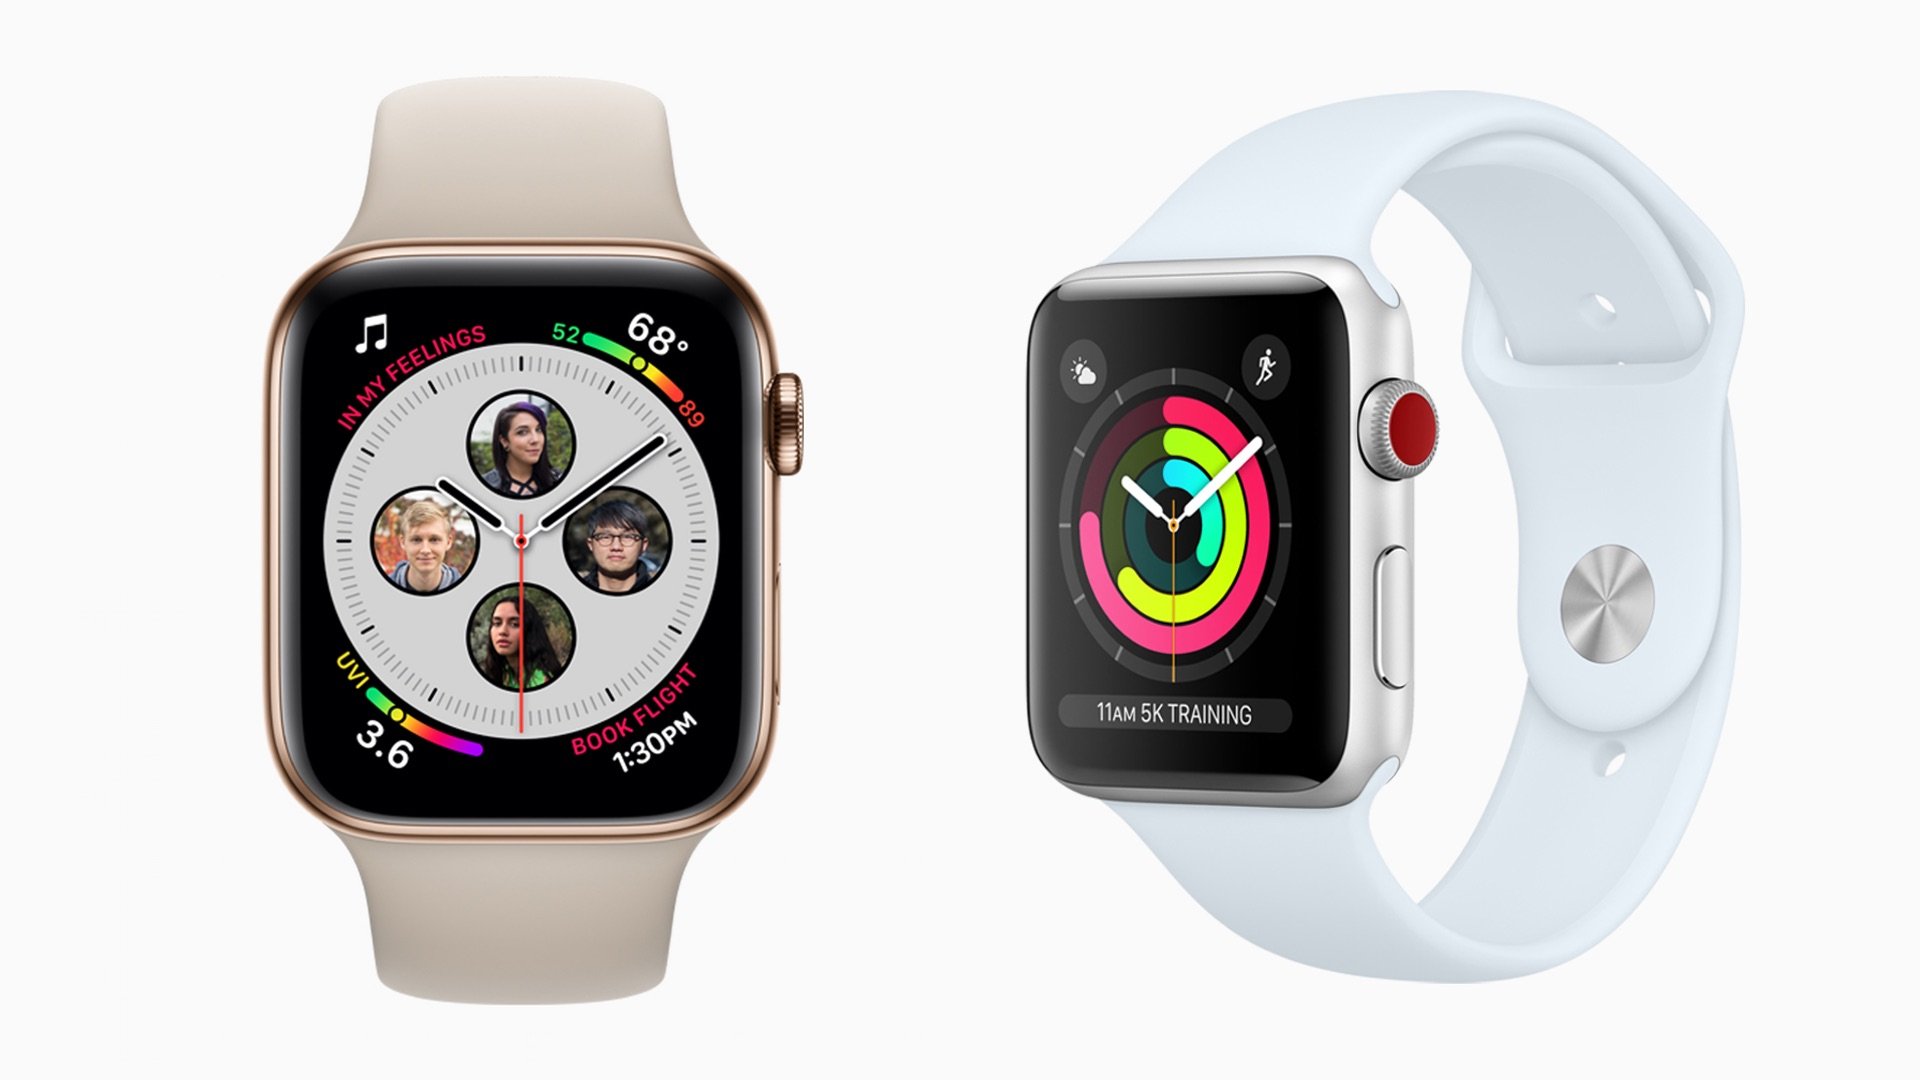 Welche Apple Smartwatch Kaufen Apple Watch Series 4 Series 3 Und Weitere Im Vergleich